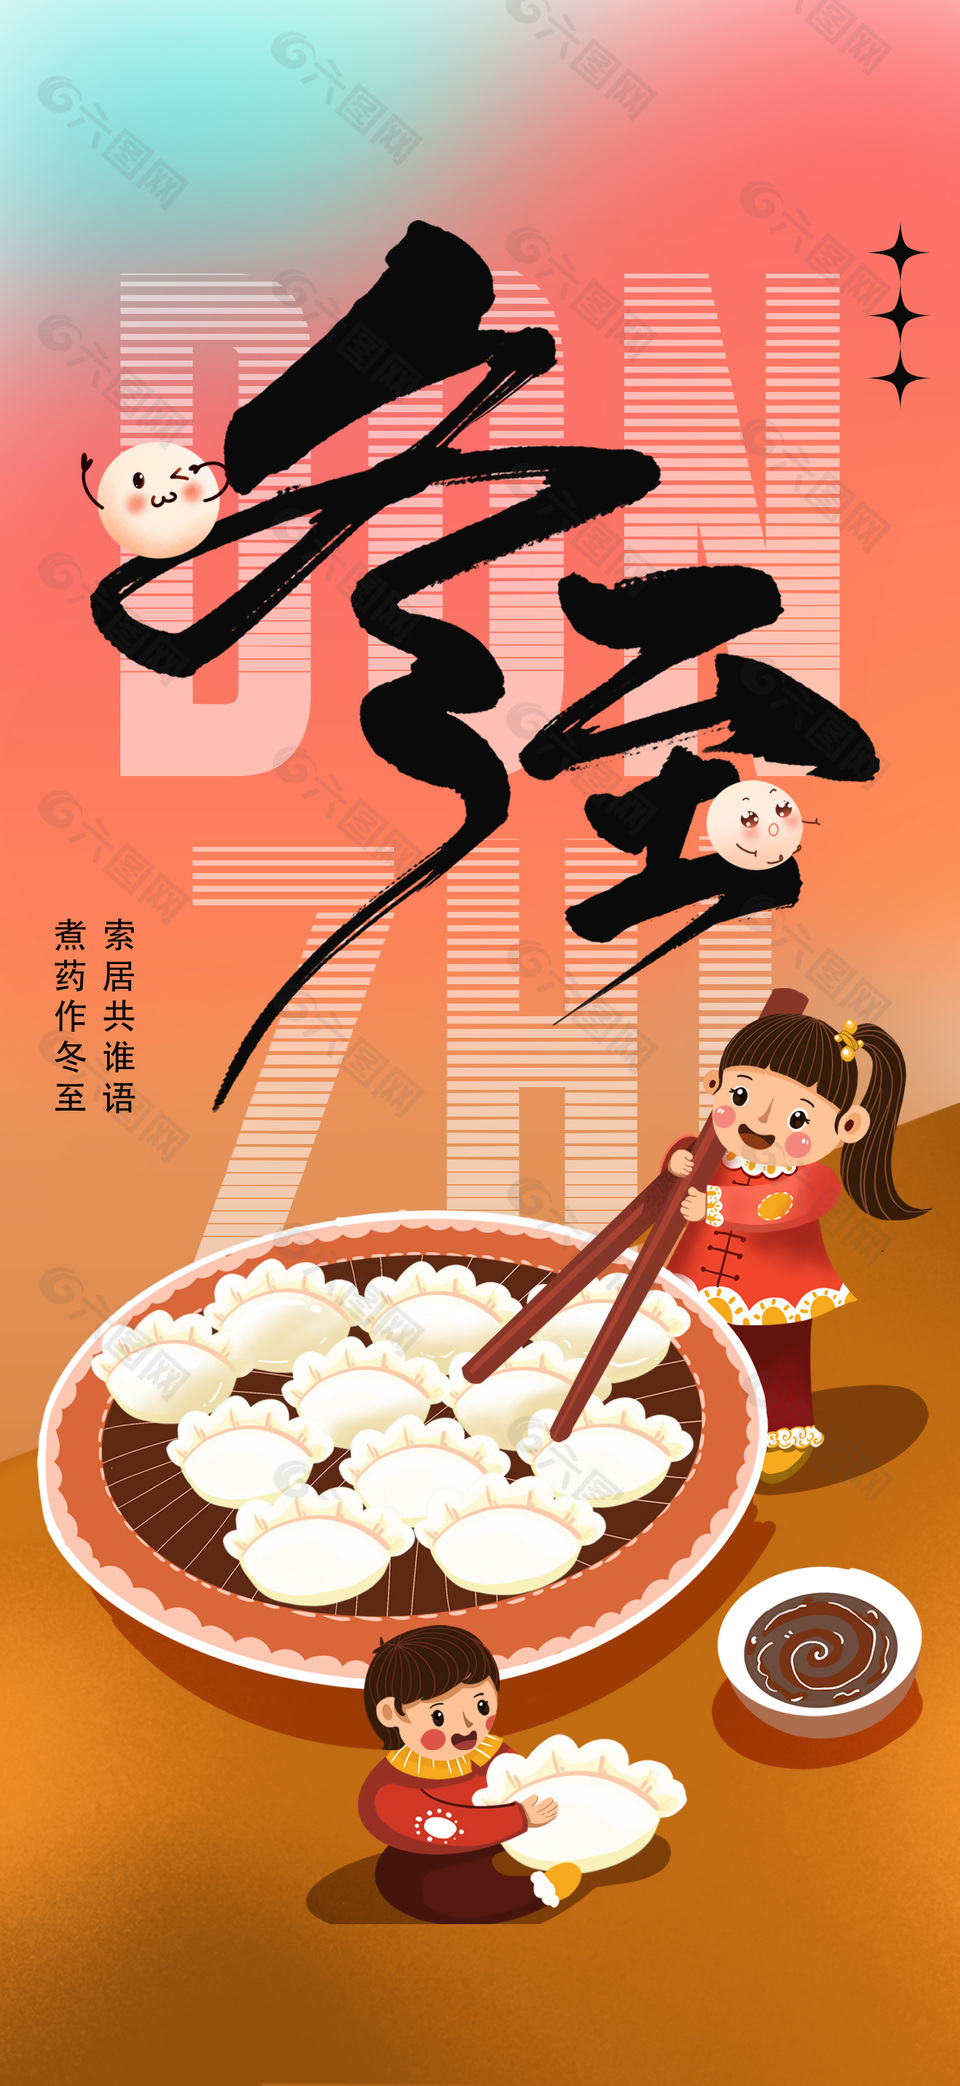 冬至吃饺子创意插画风格海报